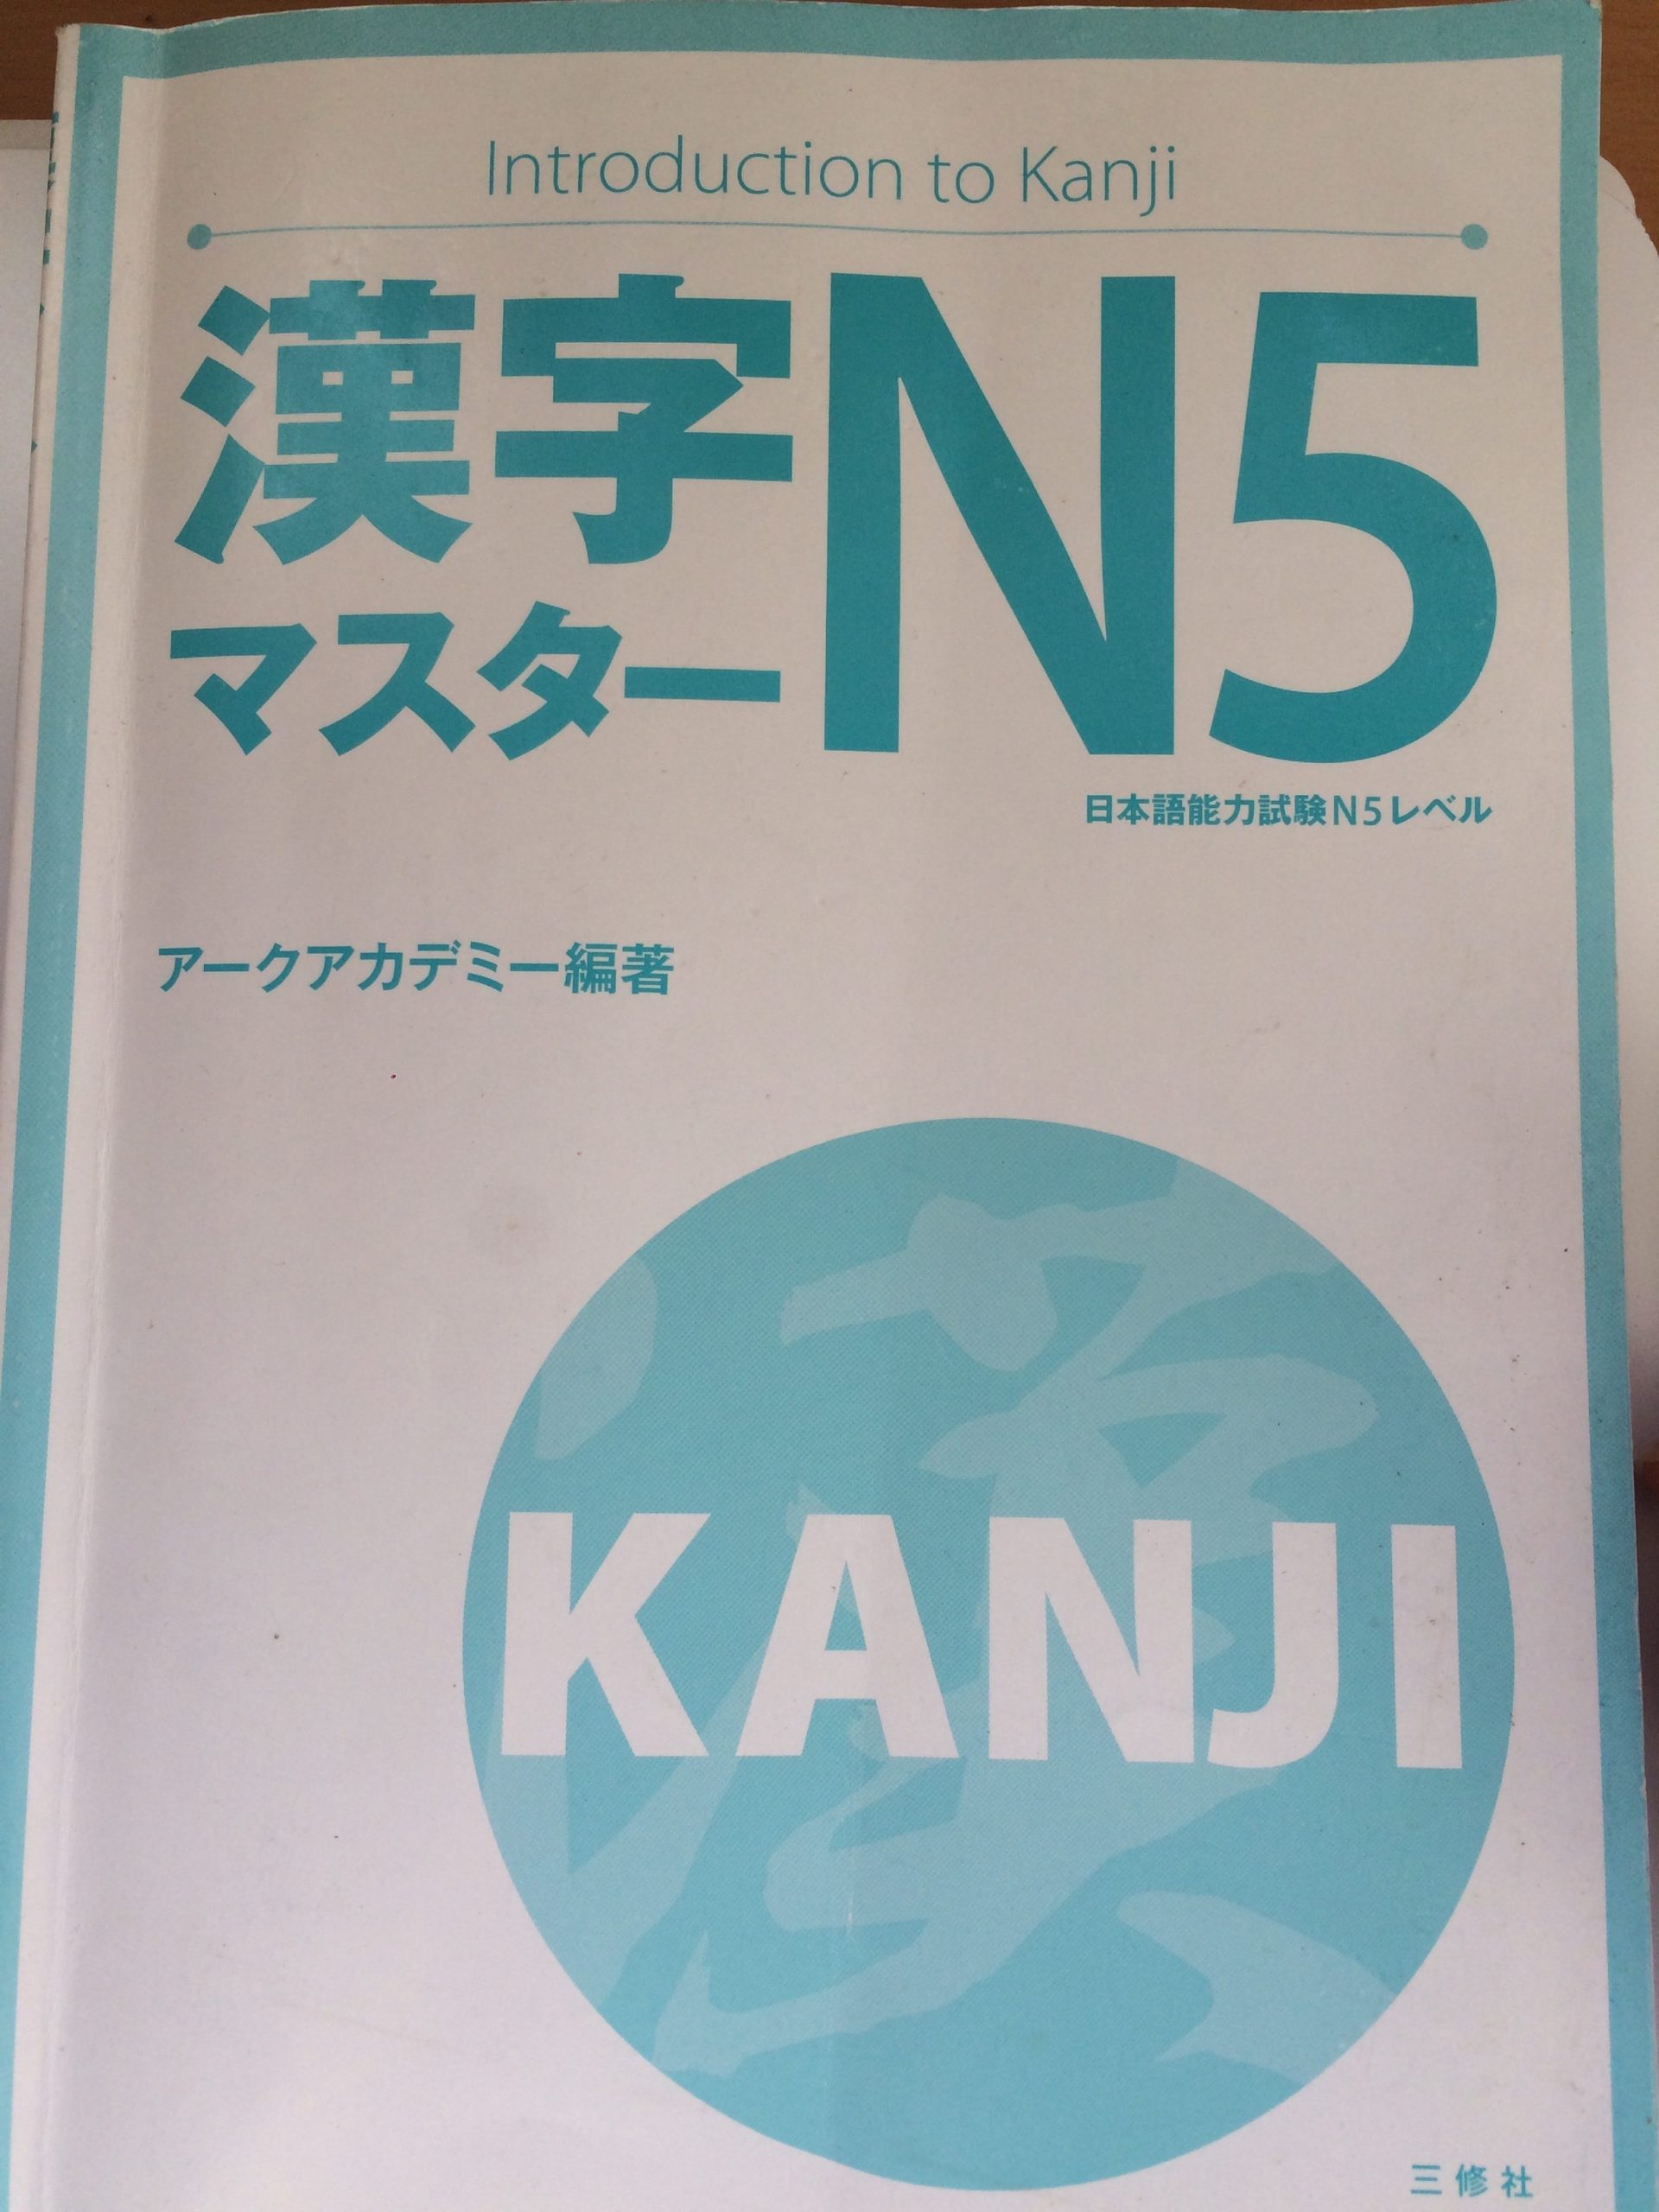 Học Kanji theo cấp độ